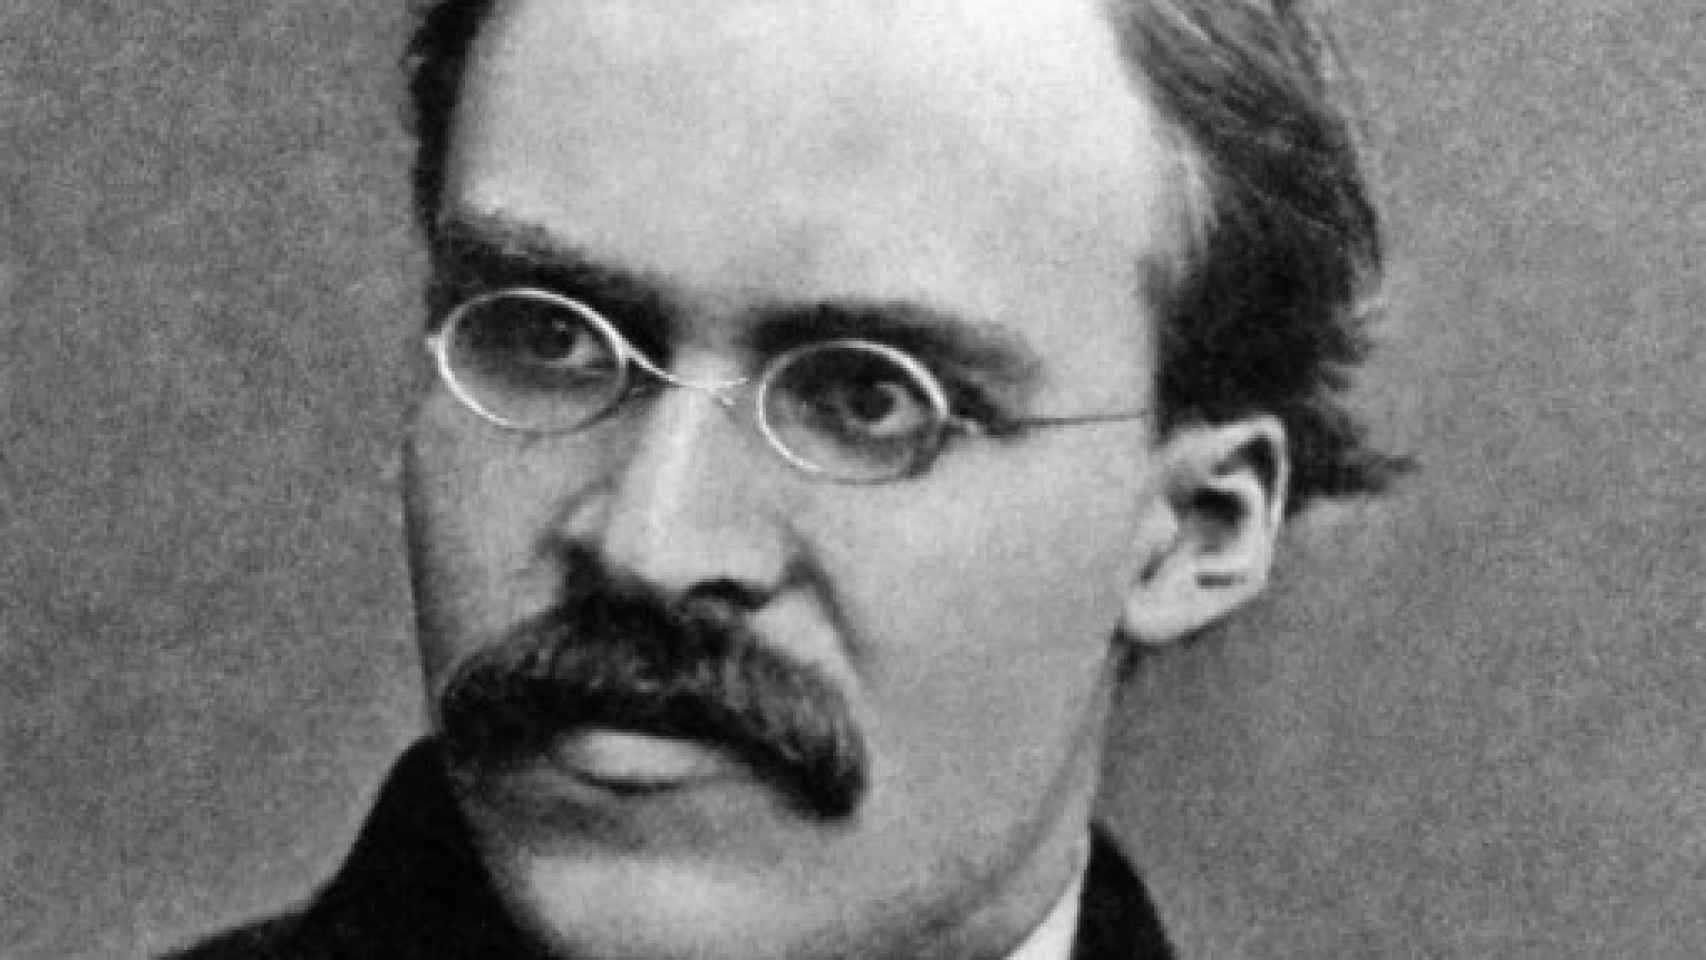 Image: El viaje de Nietzsche a Sorrento. Una travesía crucial hacia el espíritu libre